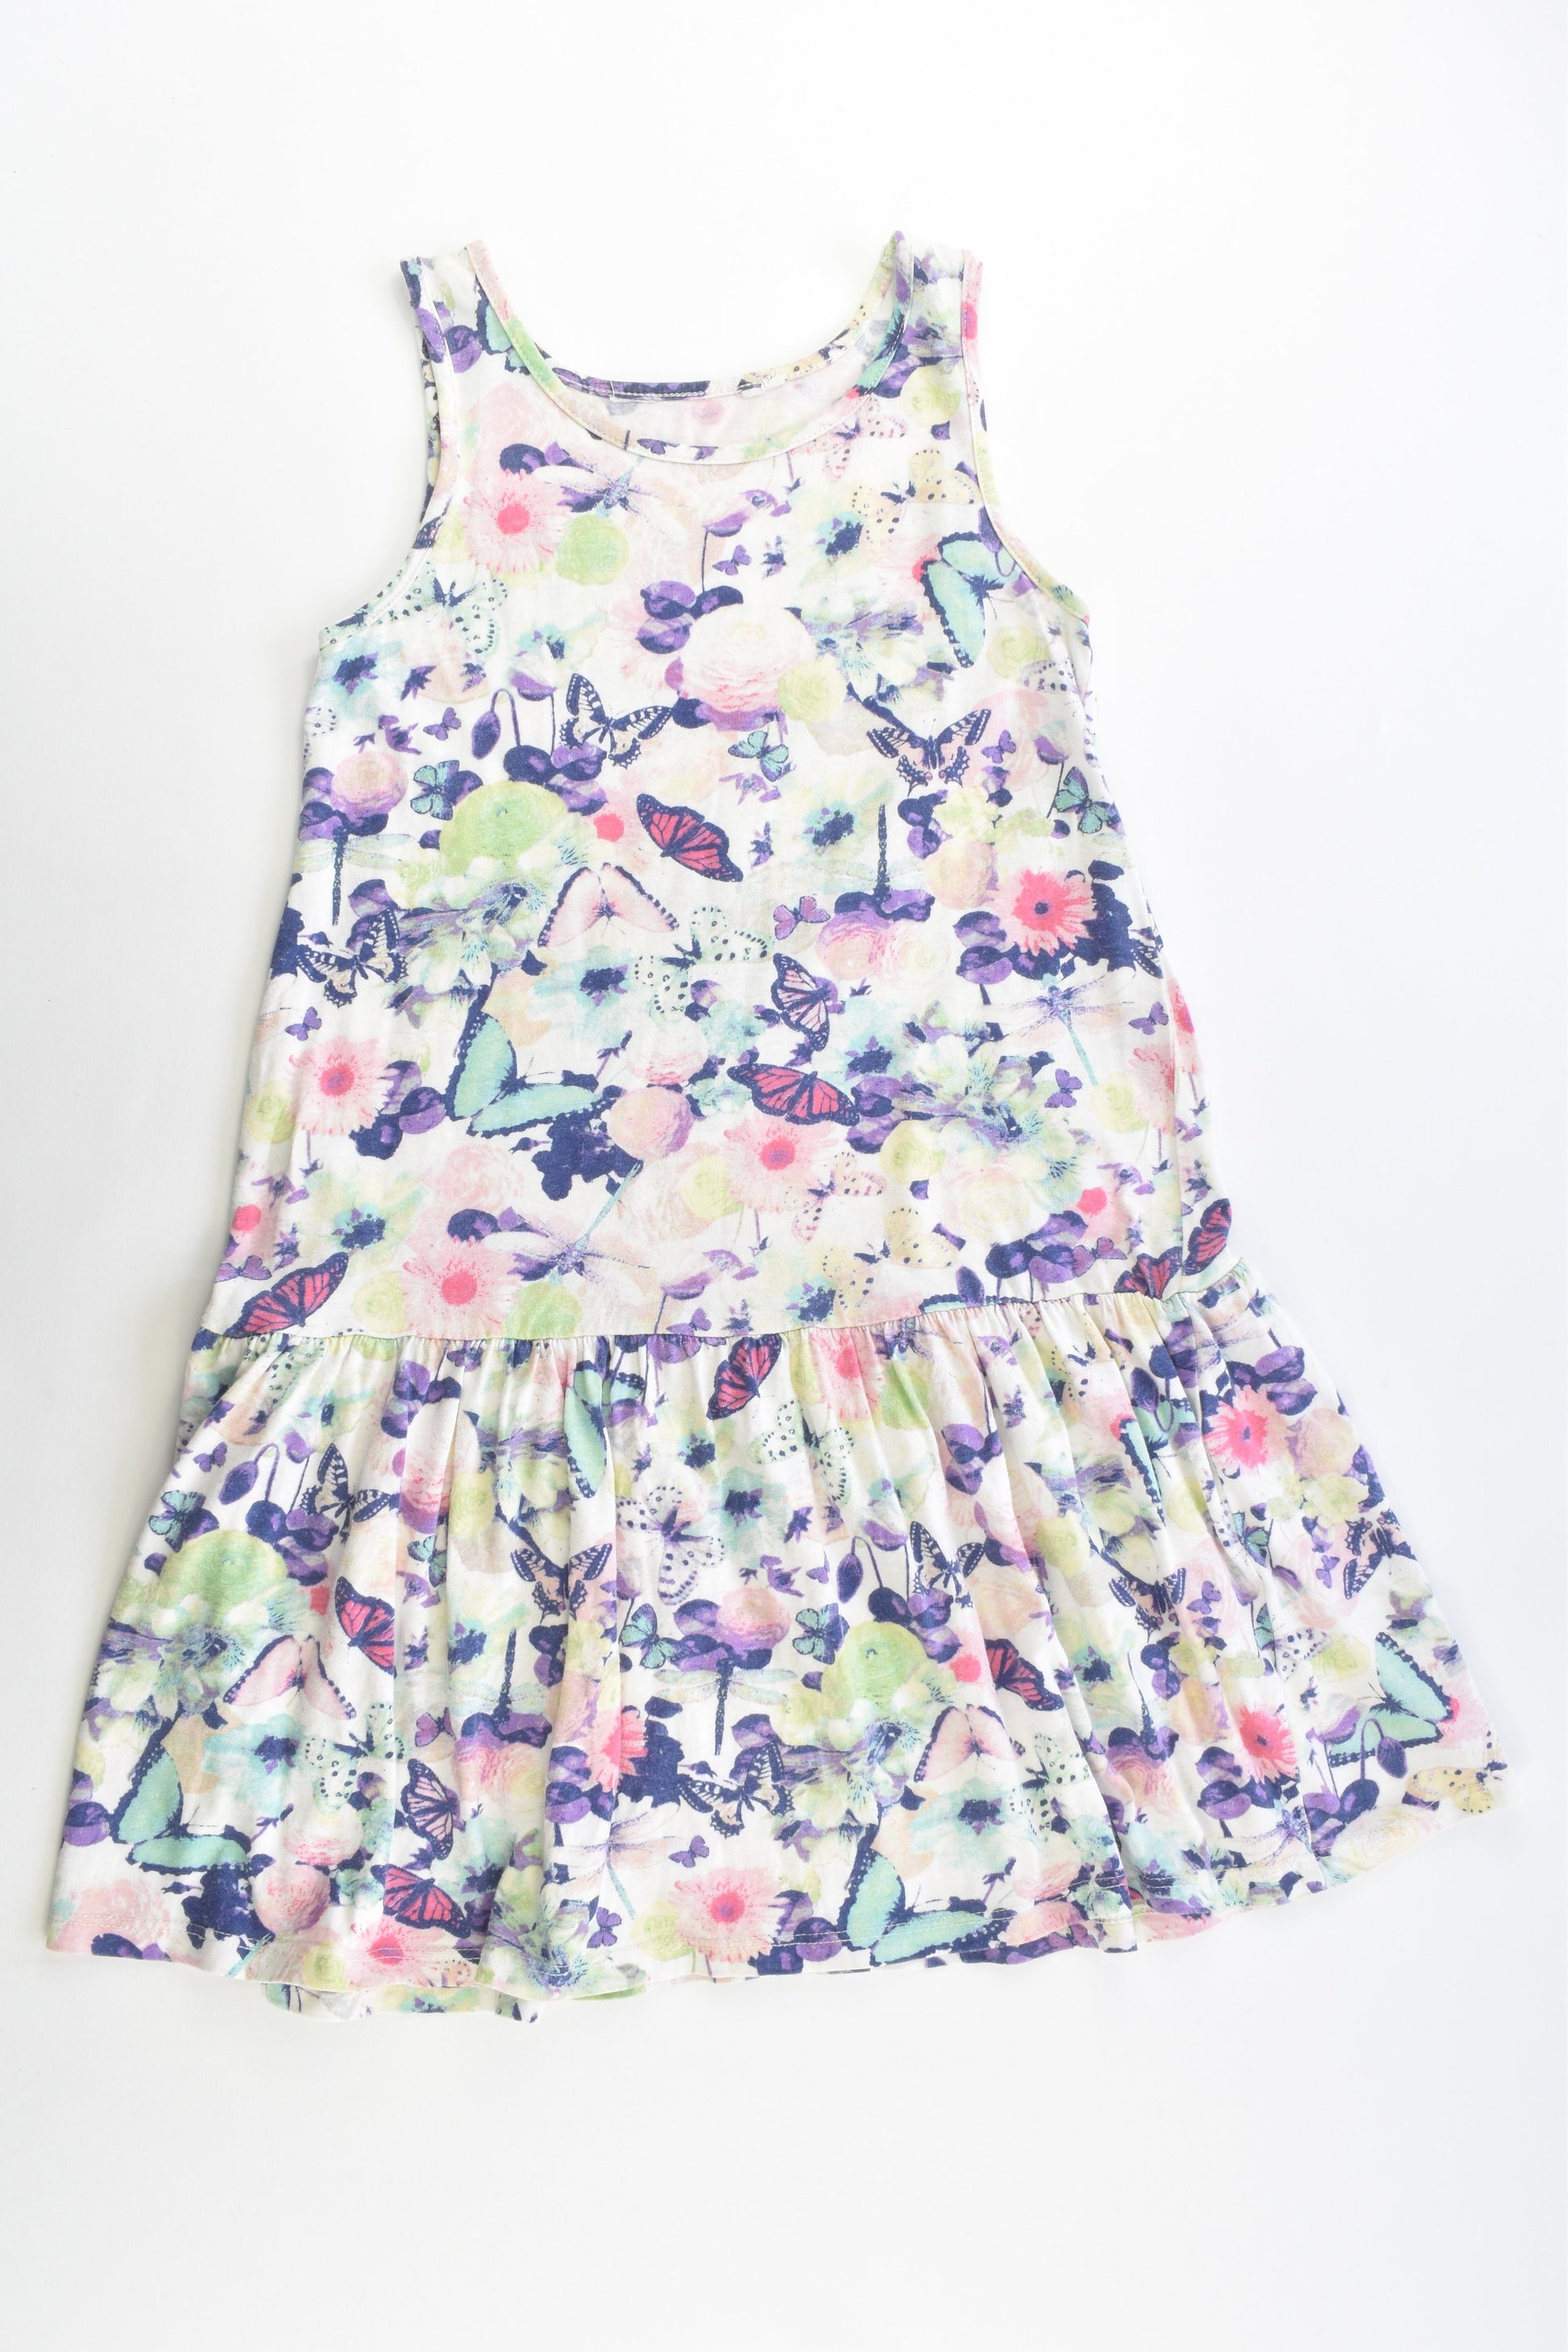 H&M Size 7 Butterflies Dress